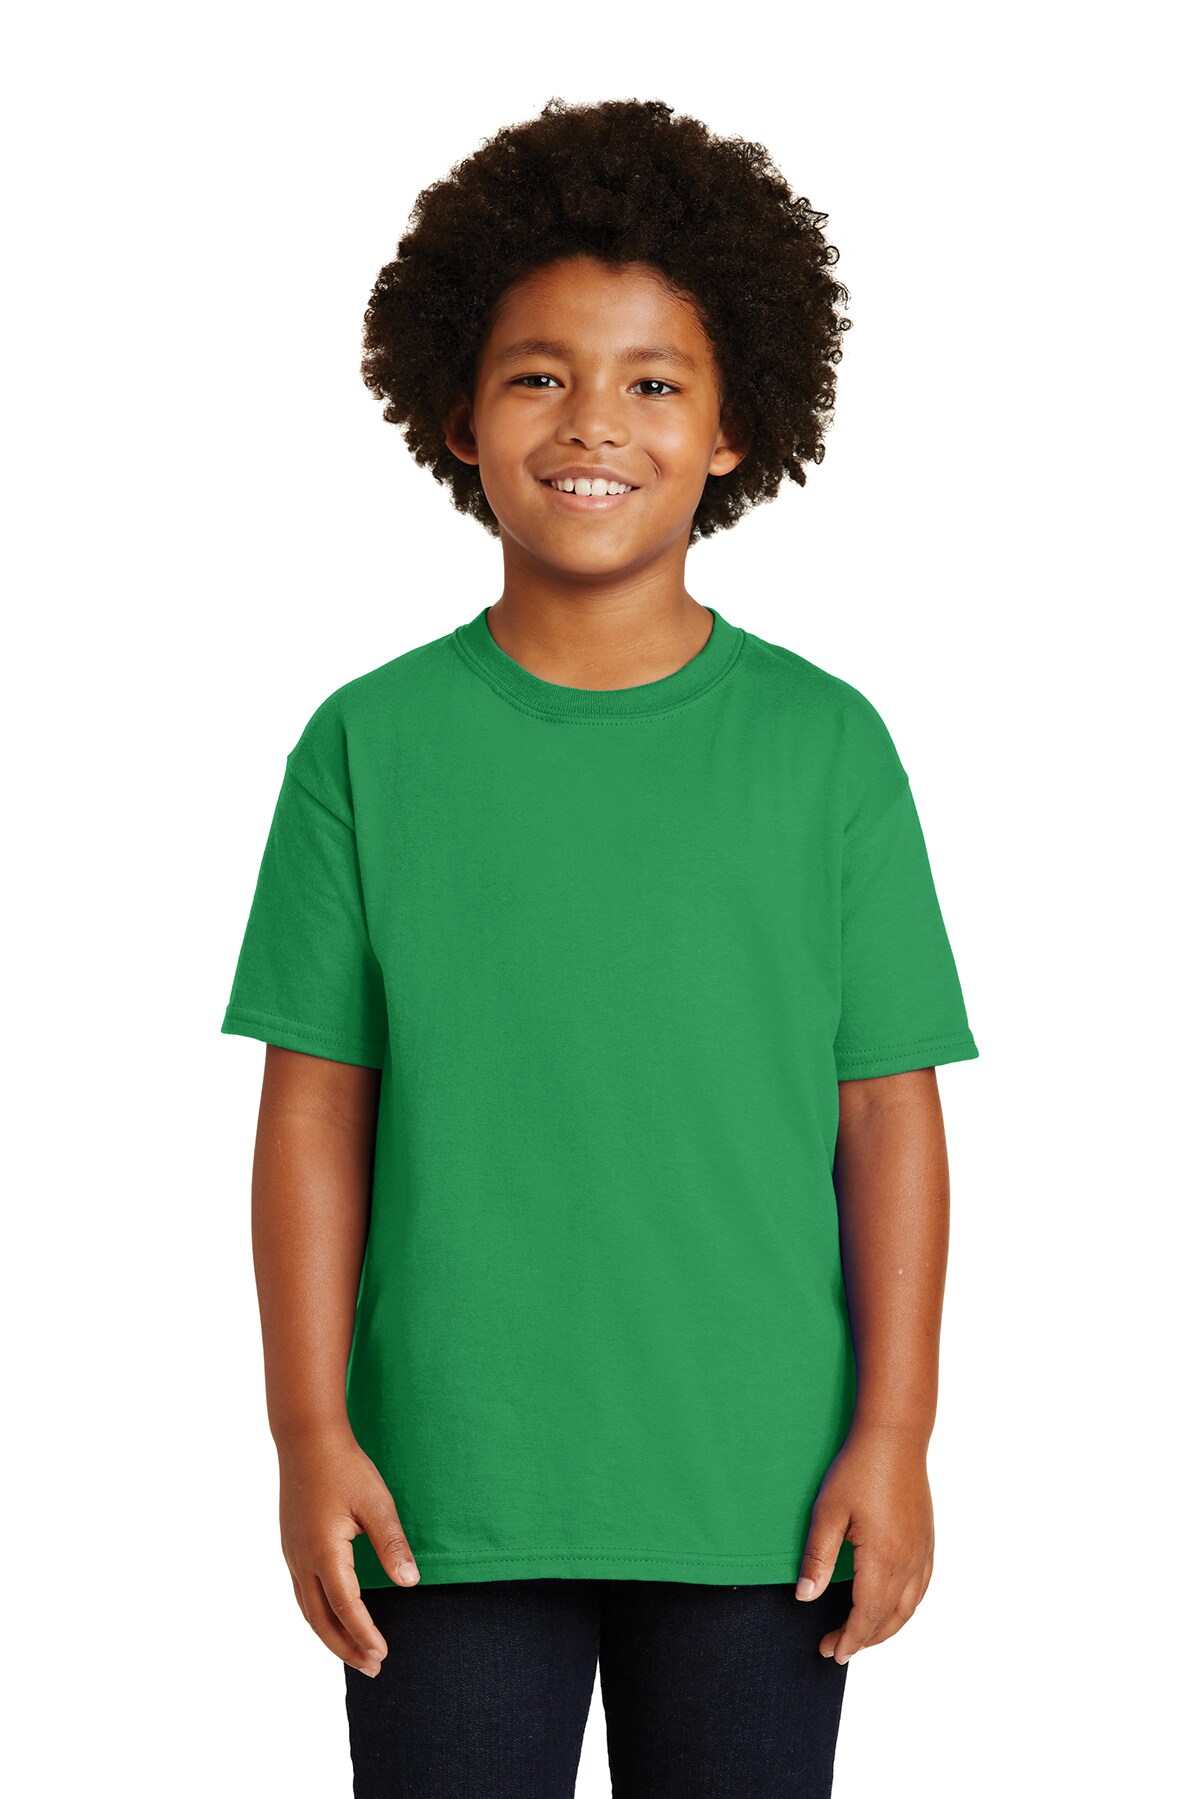 Stylish Premium T-shirt for Kids | RADYAN&#xAE;